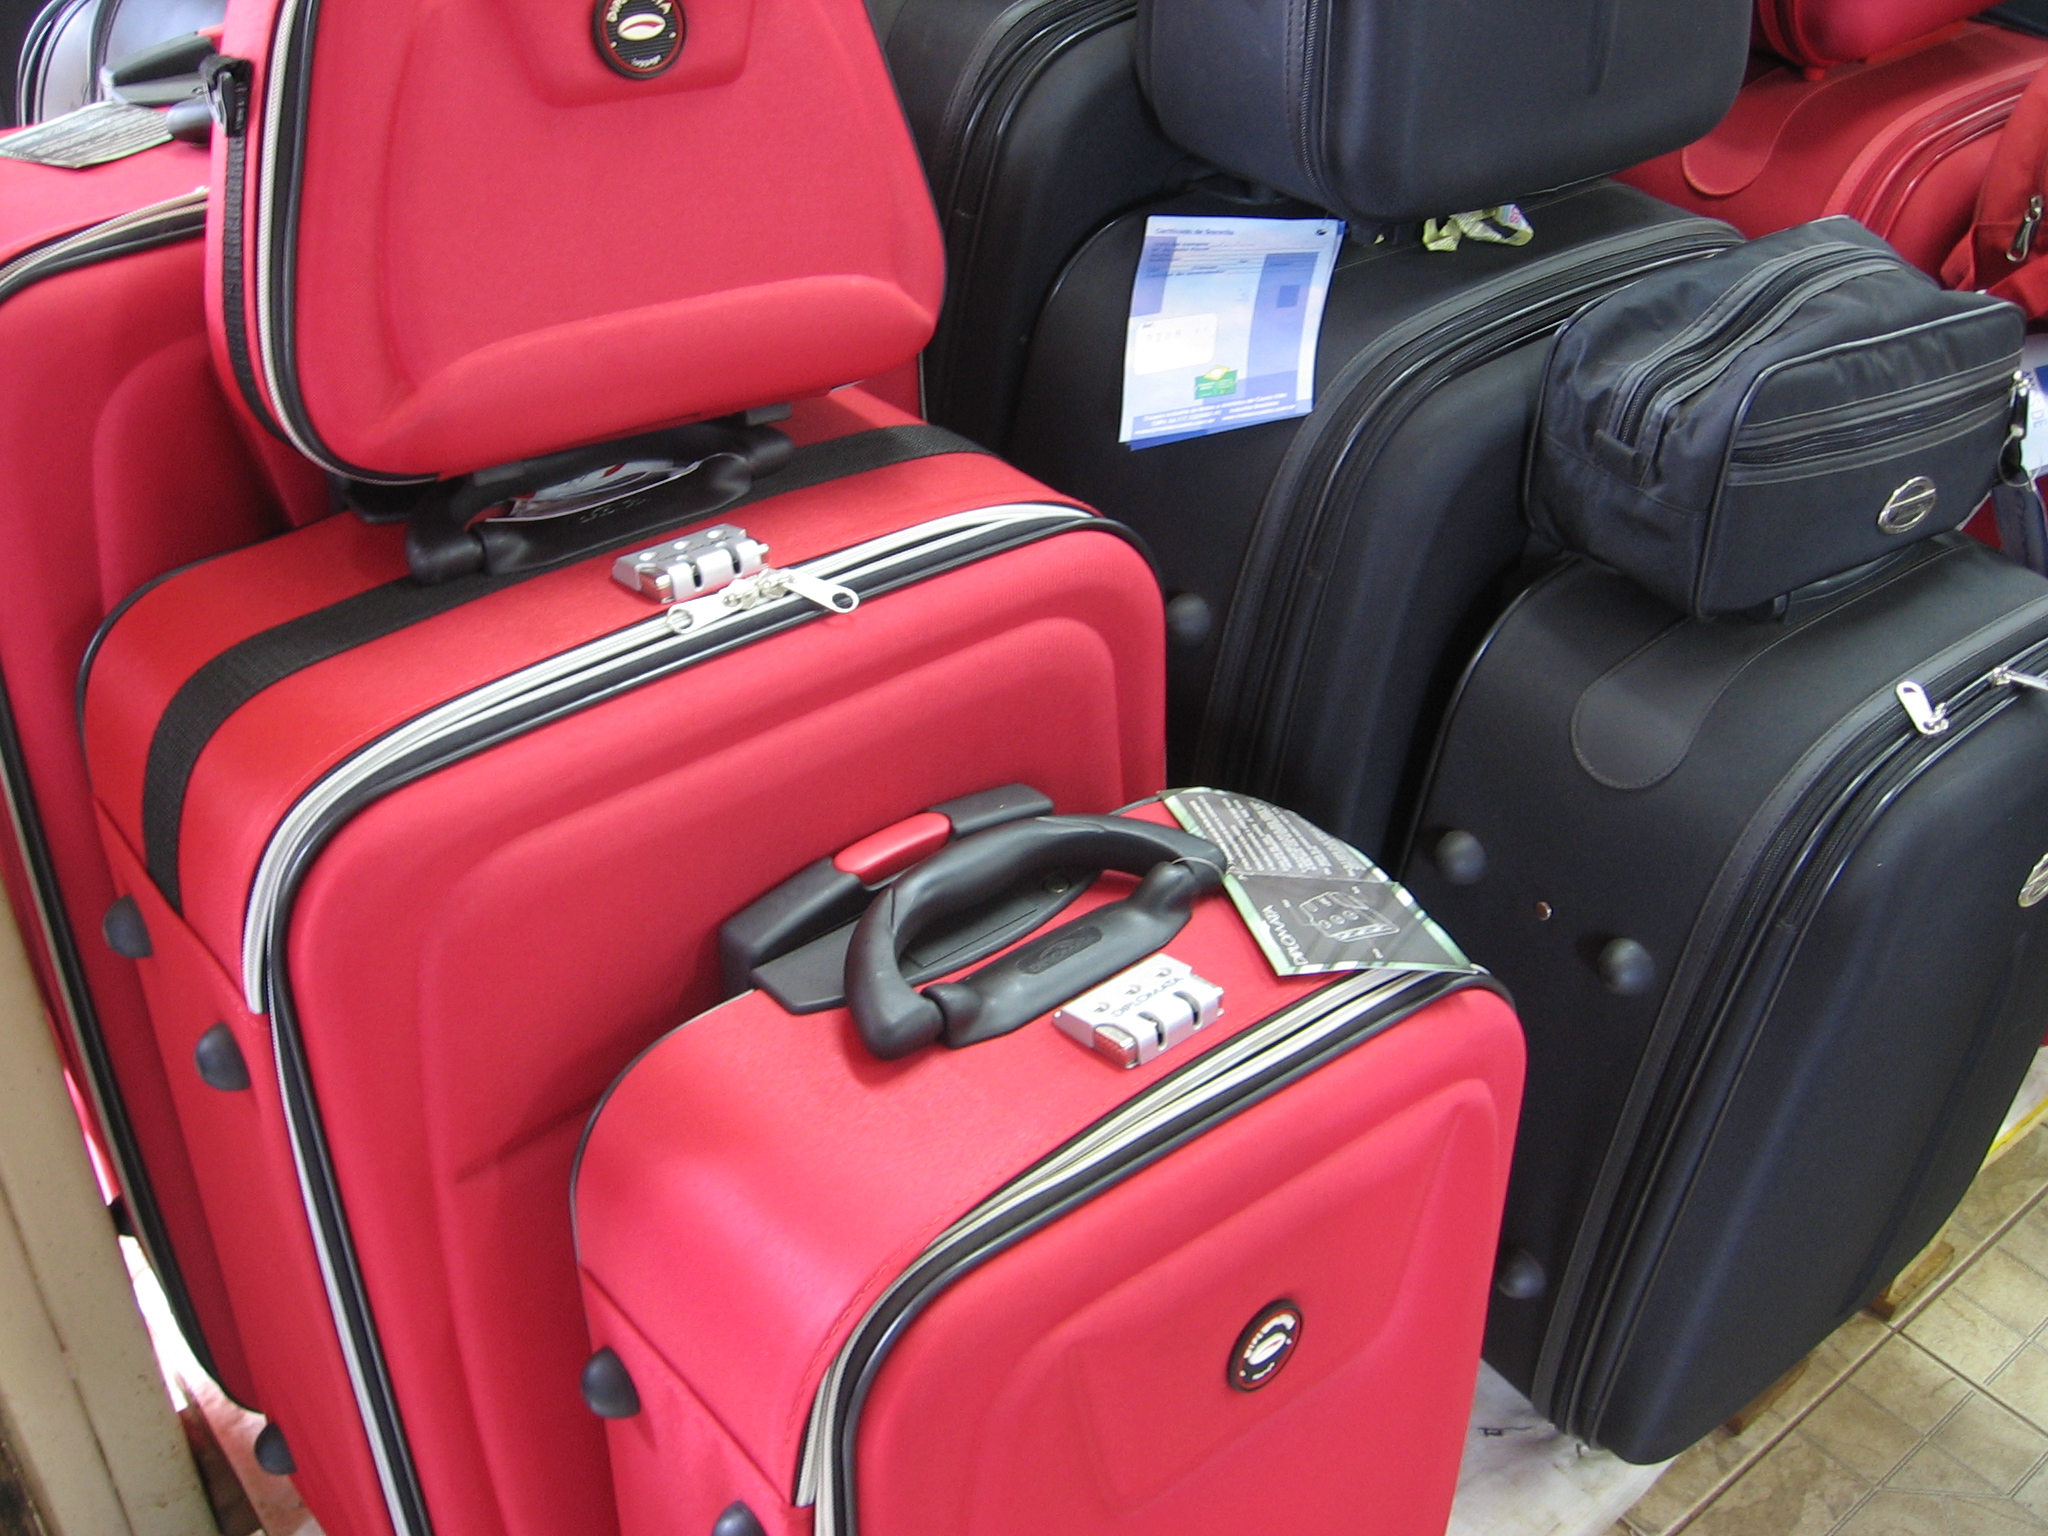 España: Solo cuatro de cada diez pasajeros de El Prat facturan sus maletas